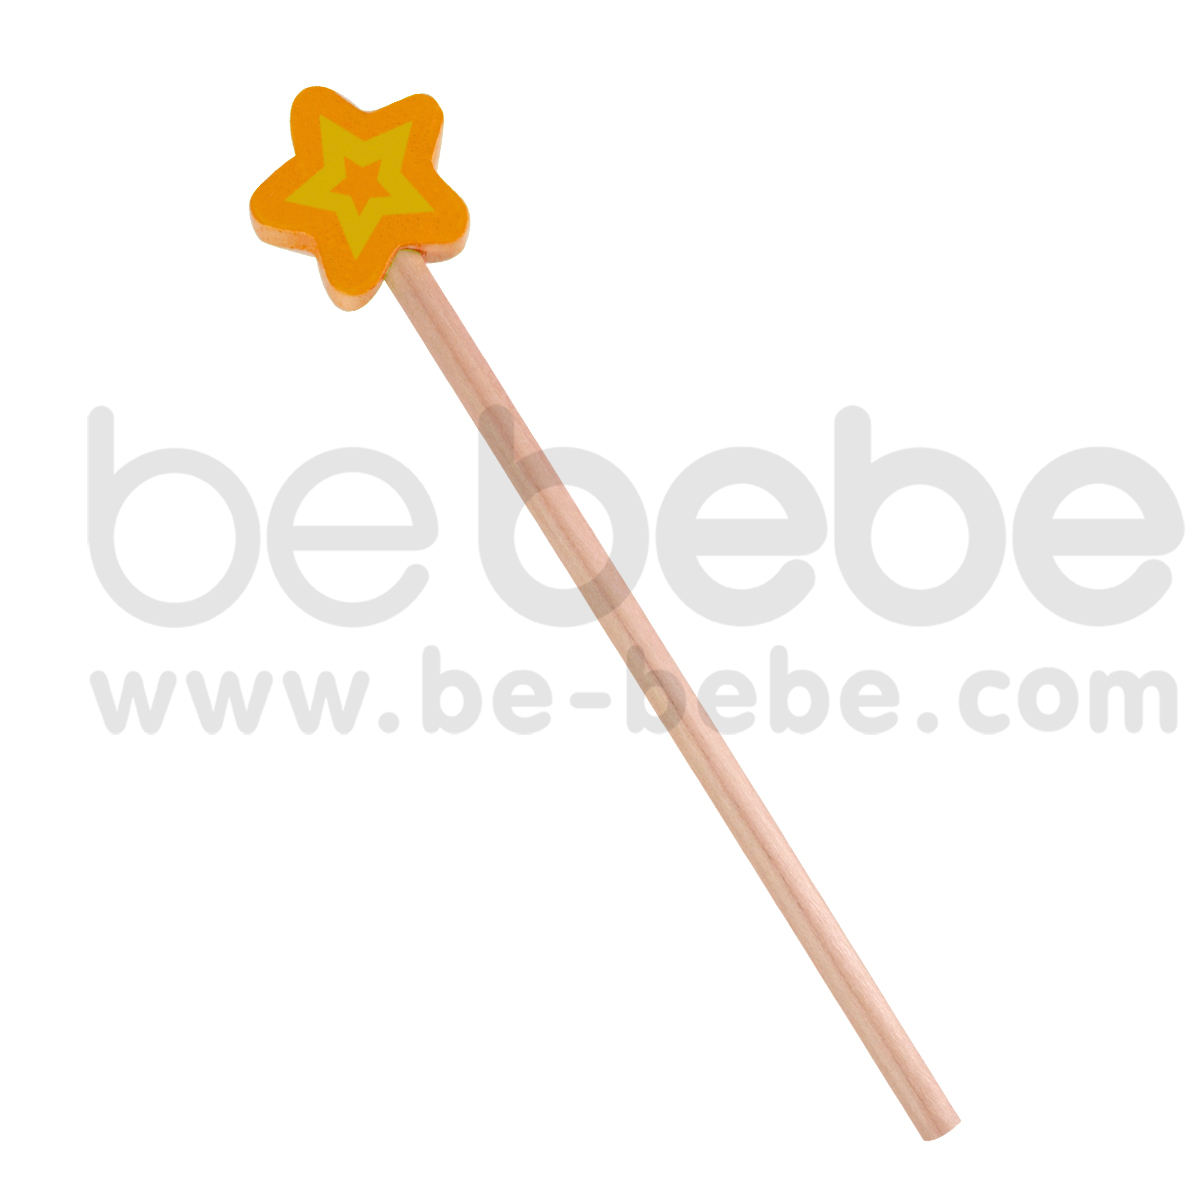 bebebe : ดินสอS ดาว/ส้ม